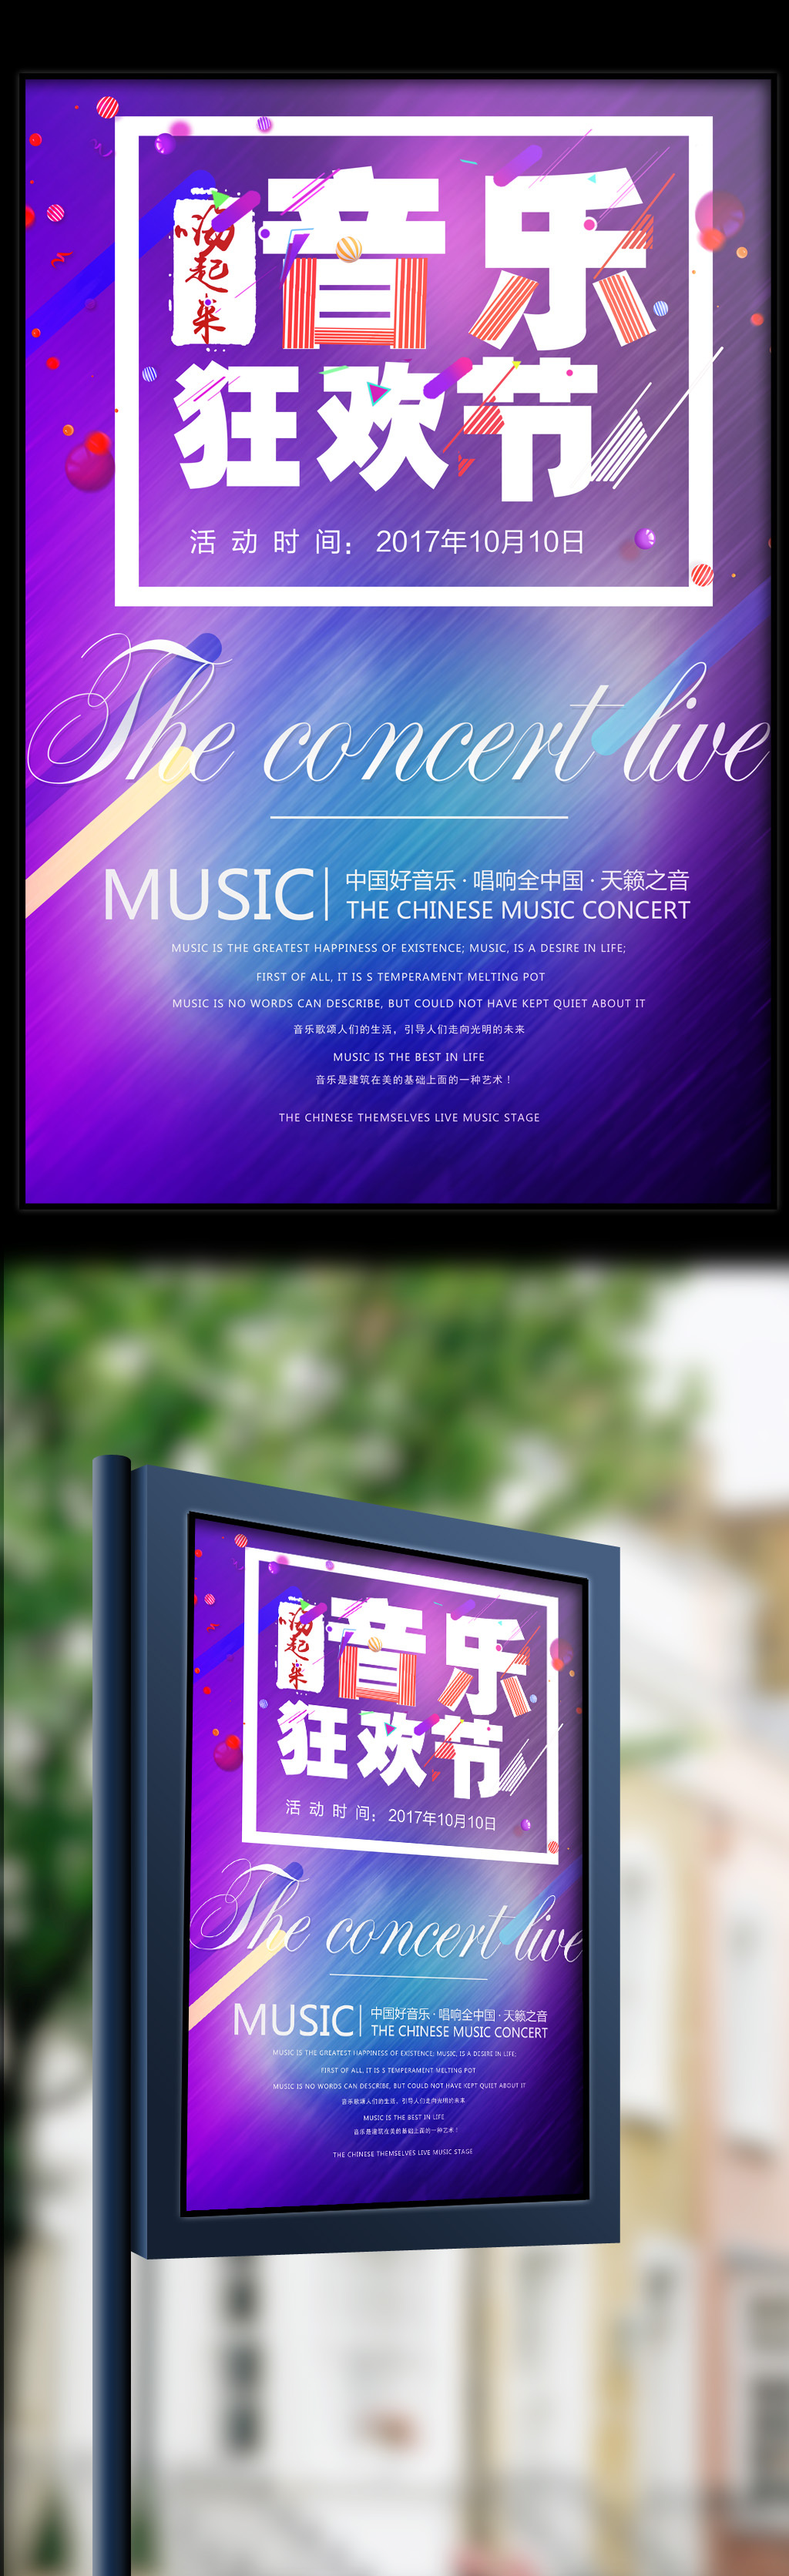 2017年紫色炫酷酒吧音乐狂欢节海报图片